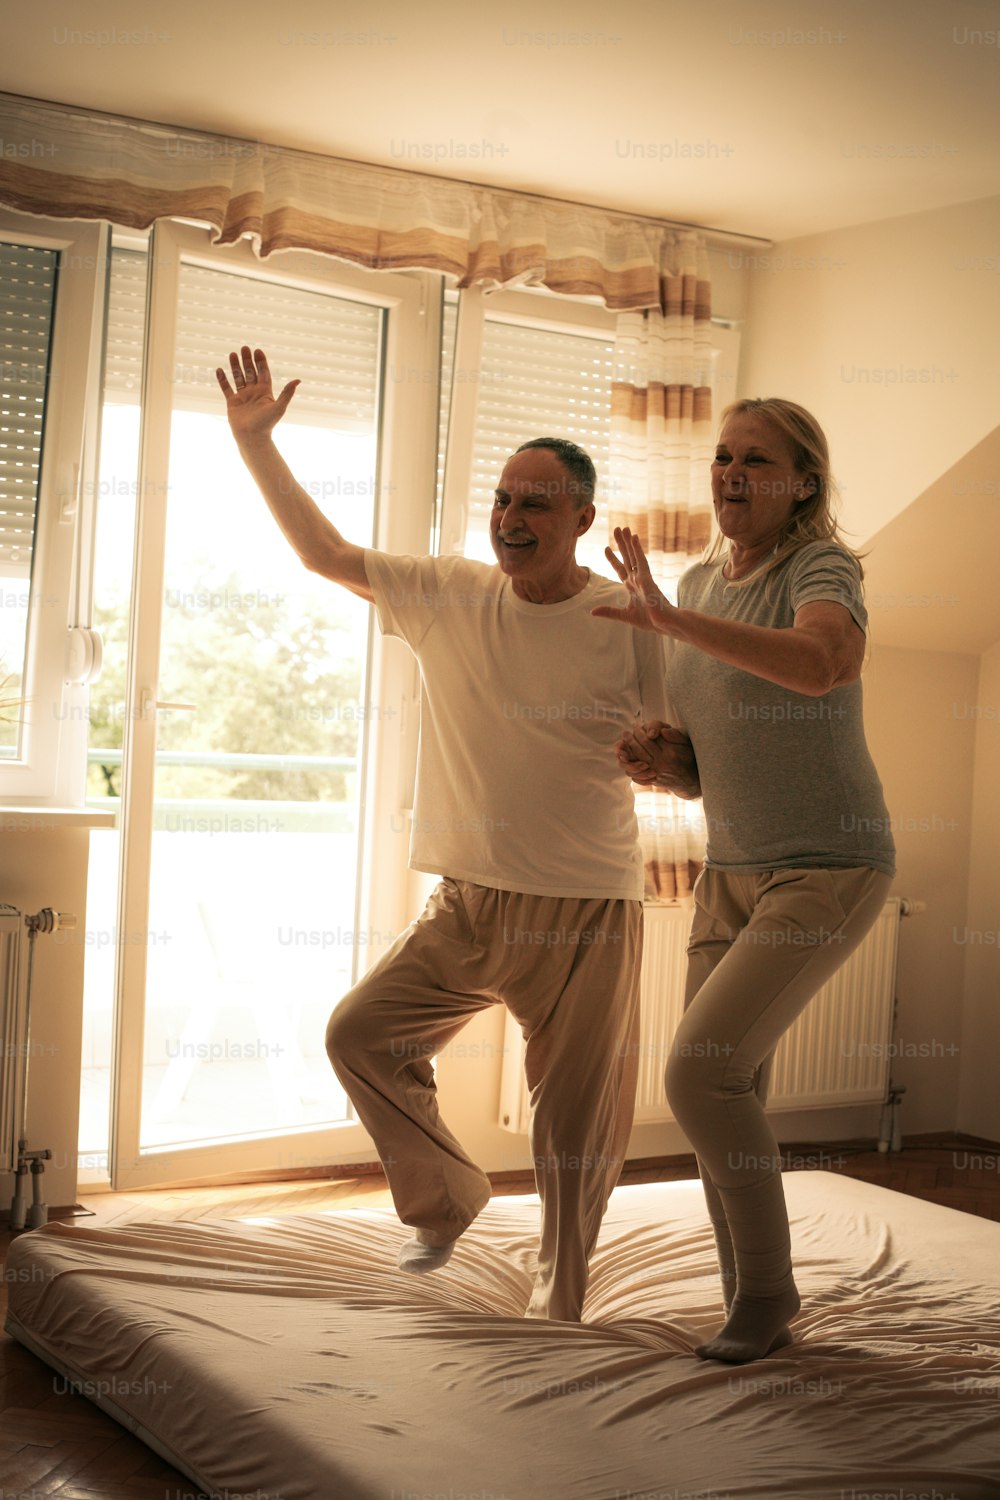 Coppia anziana che balla e salta insieme sul letto tenendosi per mano.